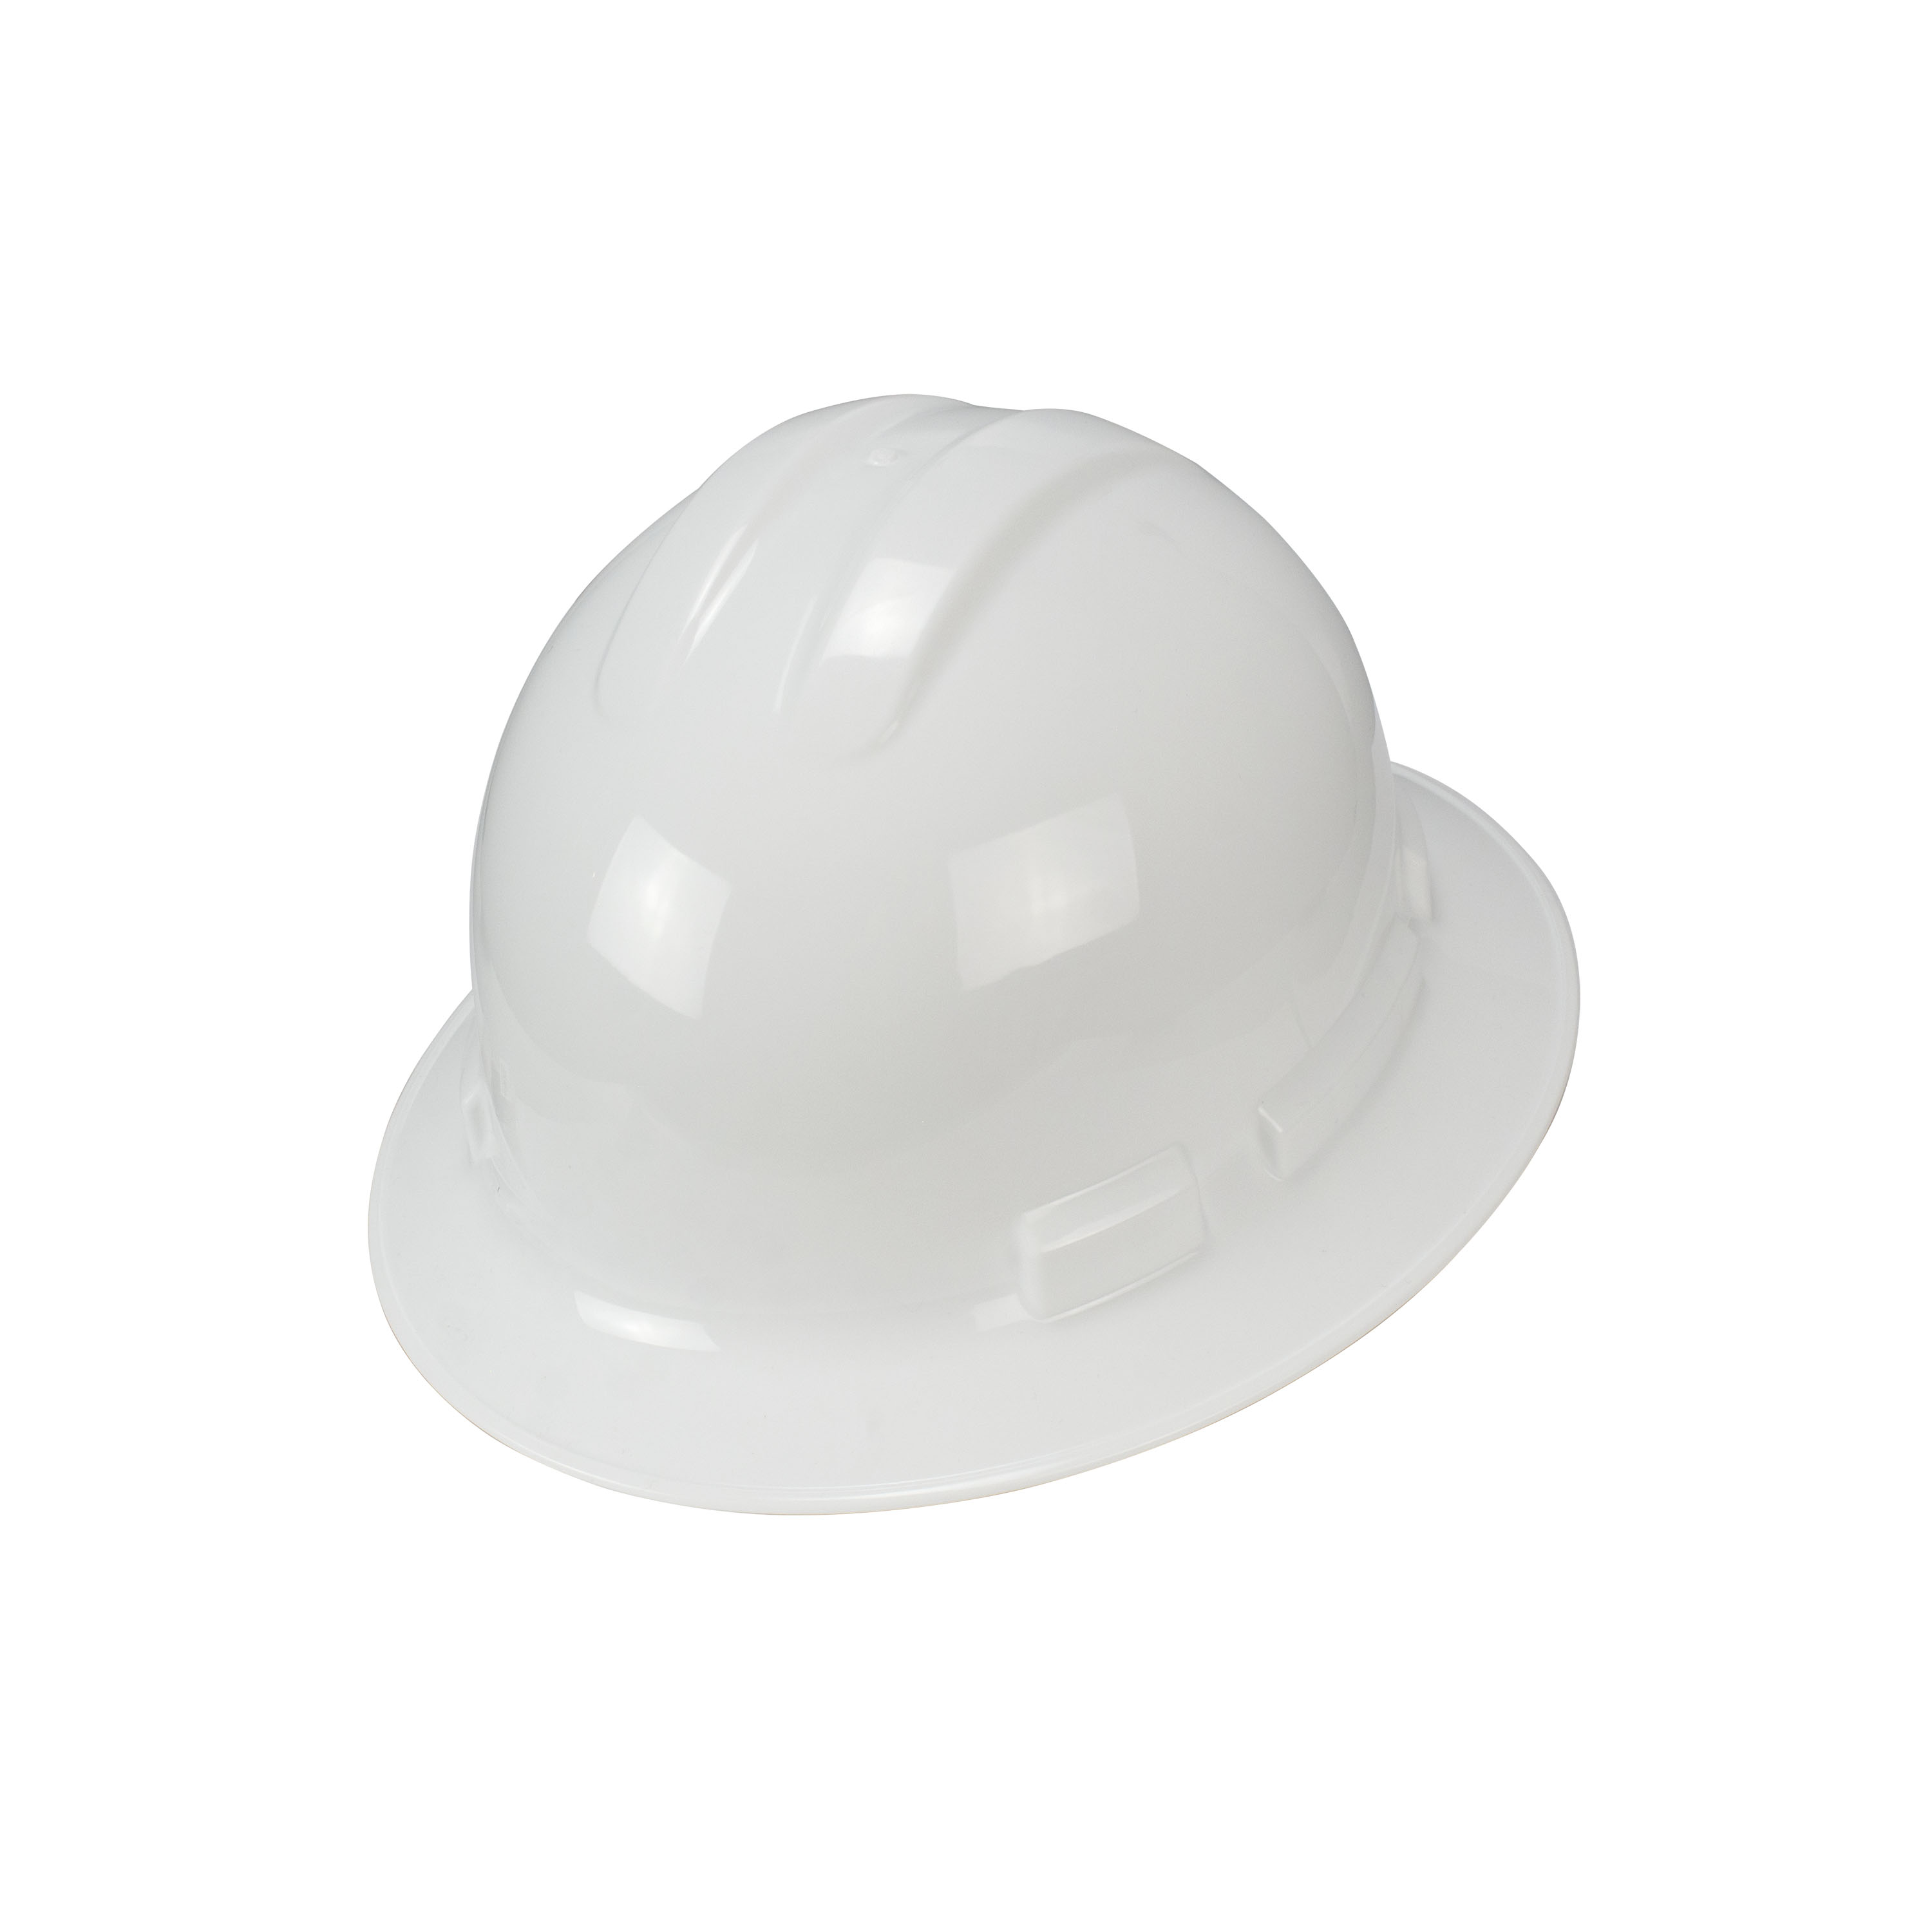 DPG11FB Full Brim Hard Hat - White